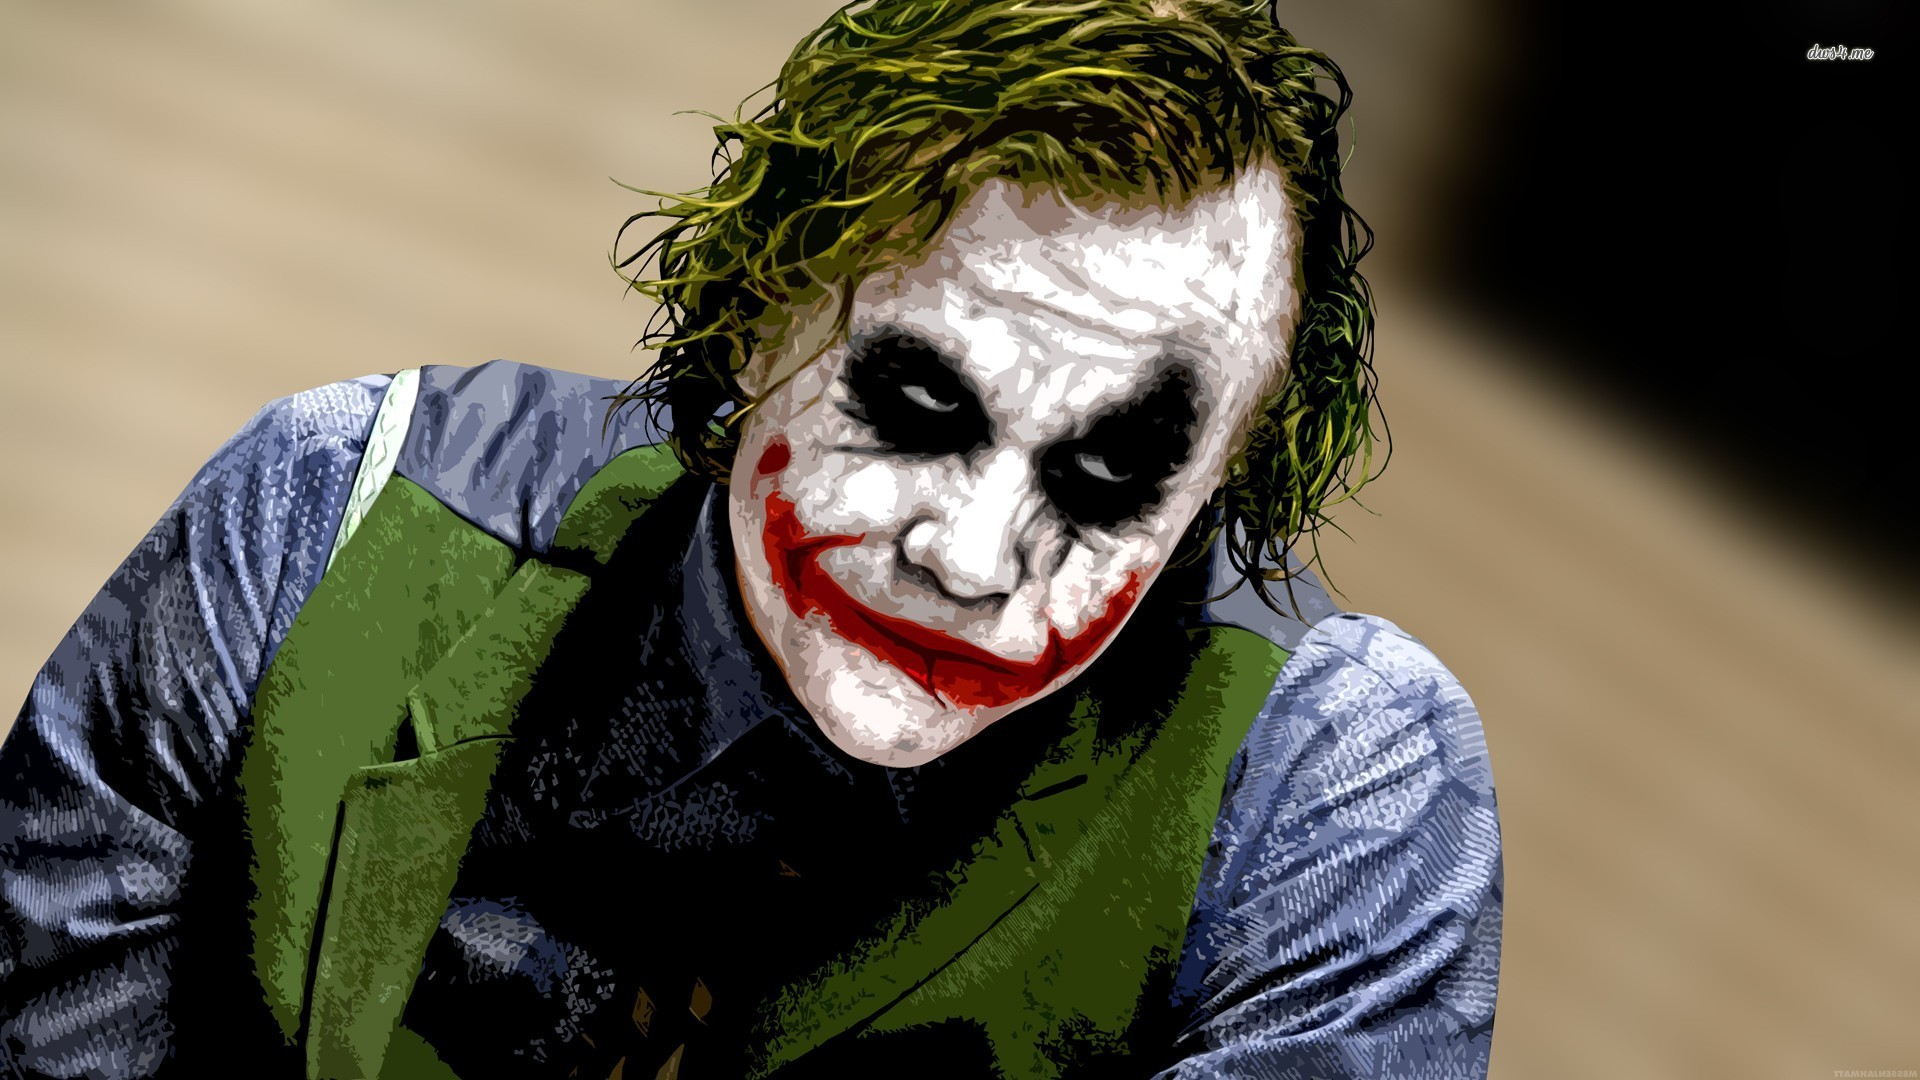 Joker images